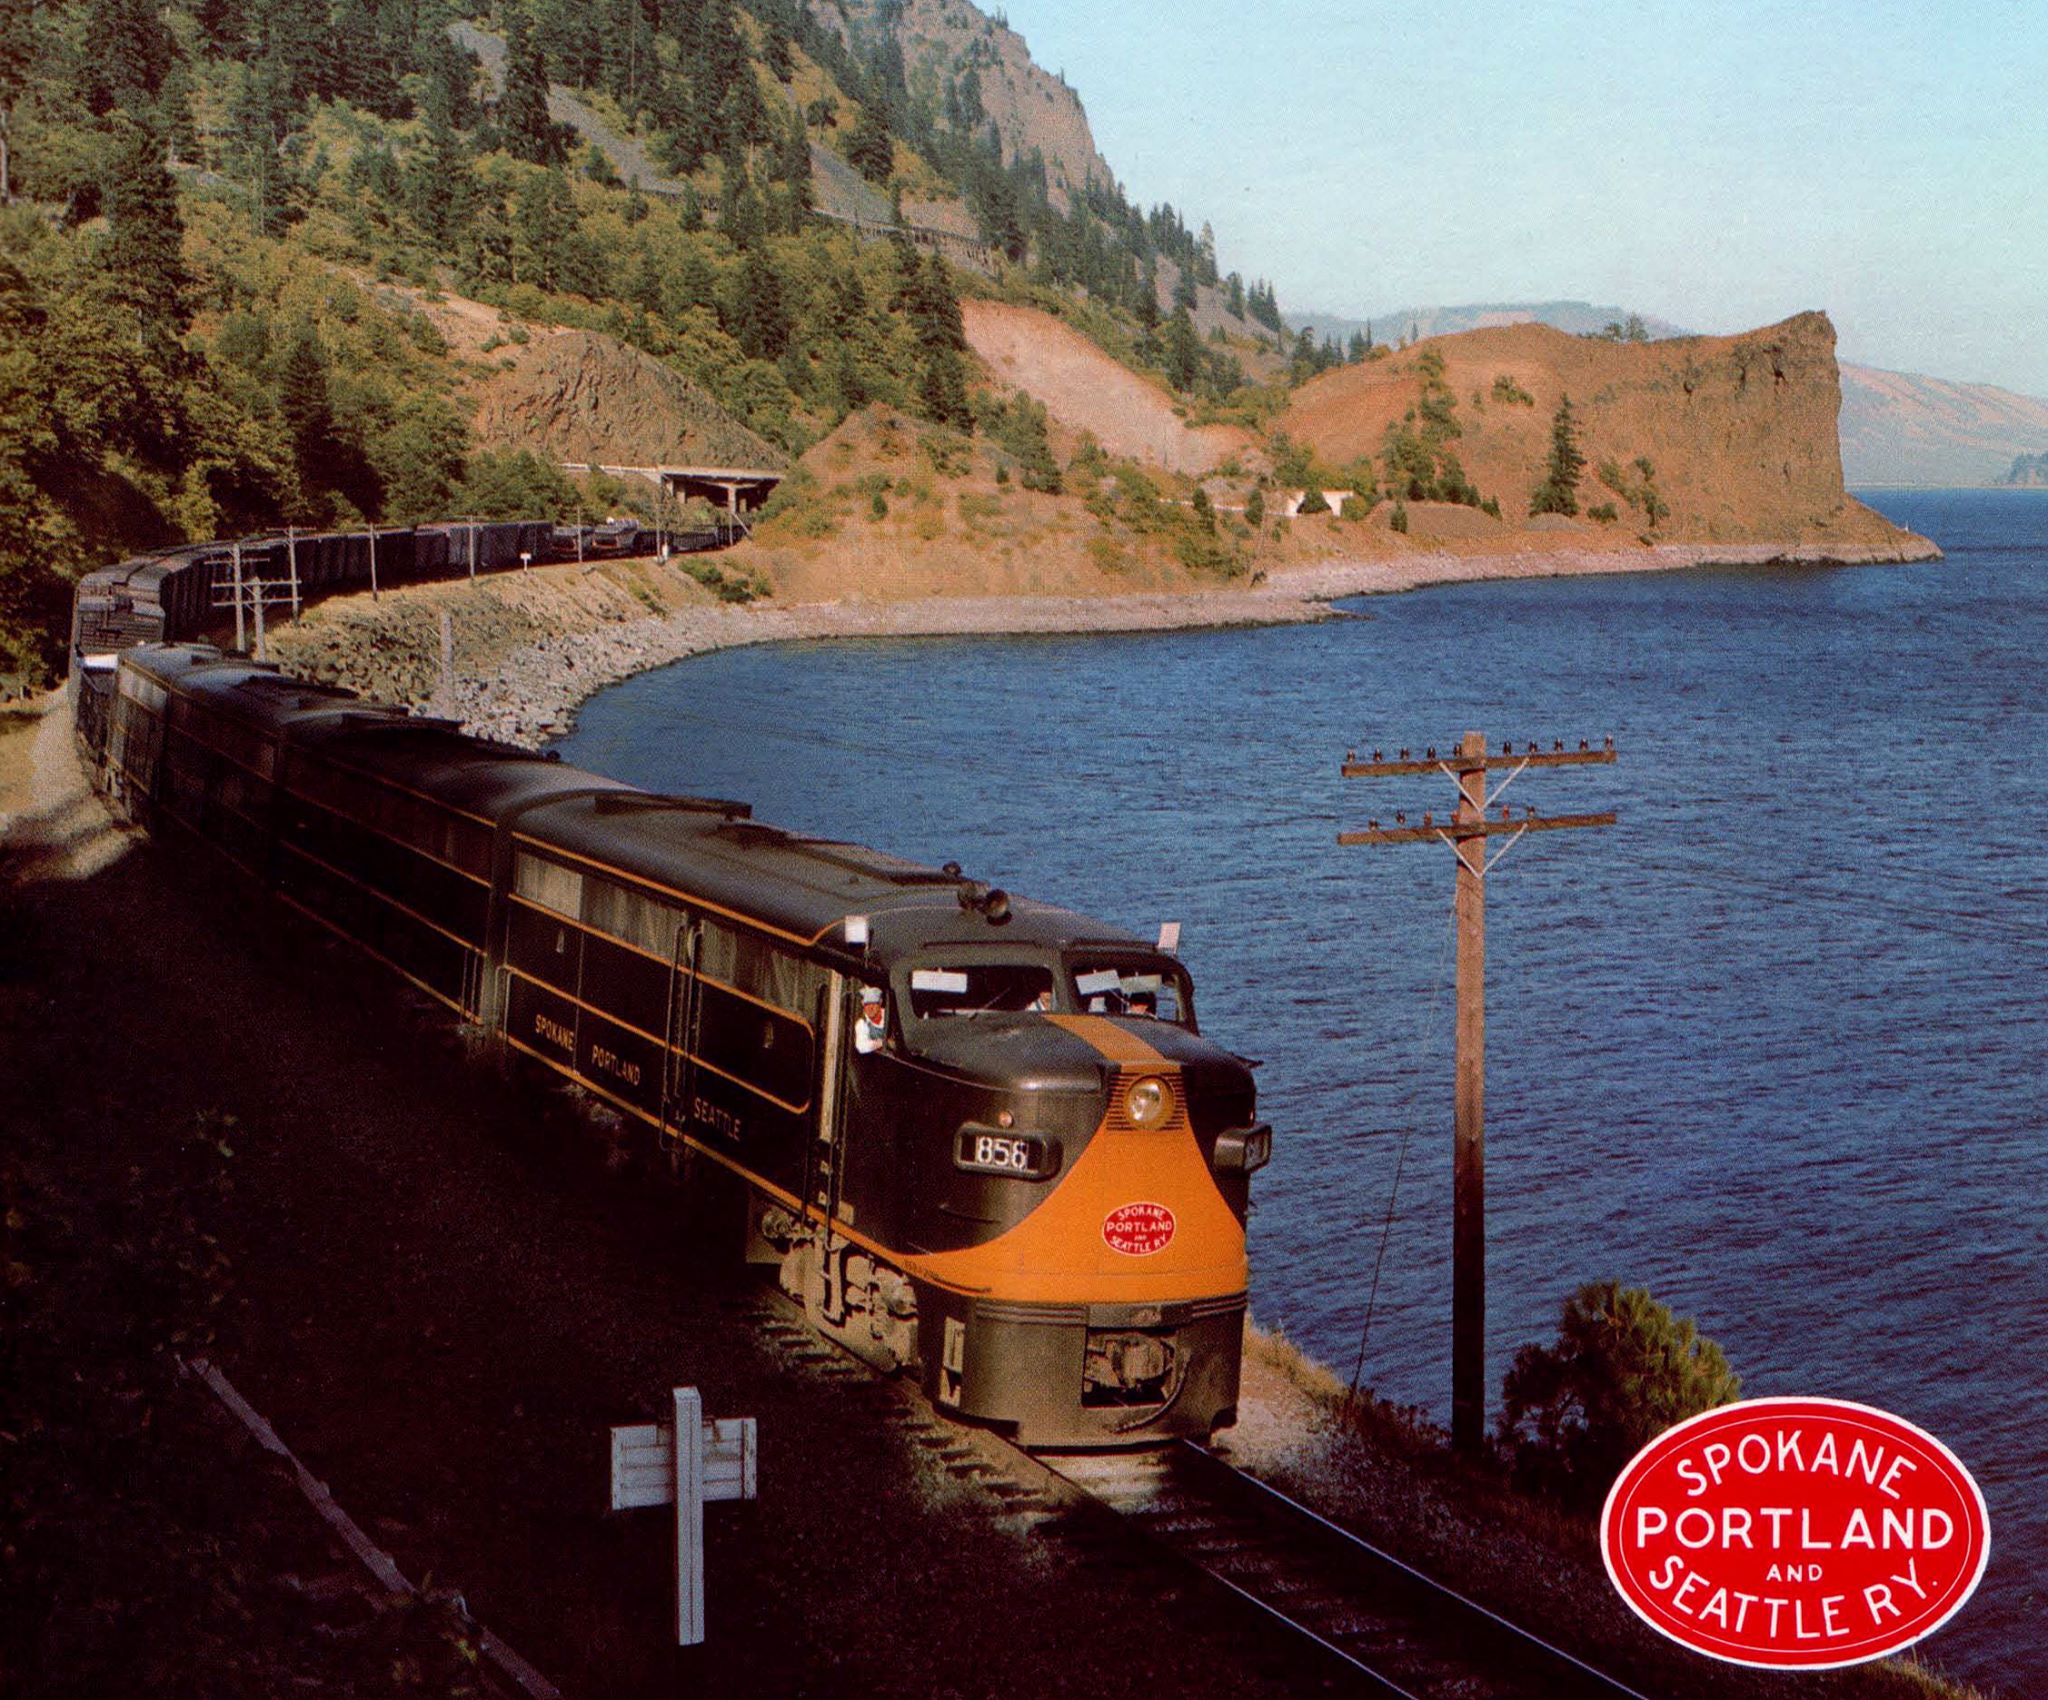 The Spokane, Portland and Seattle Railway